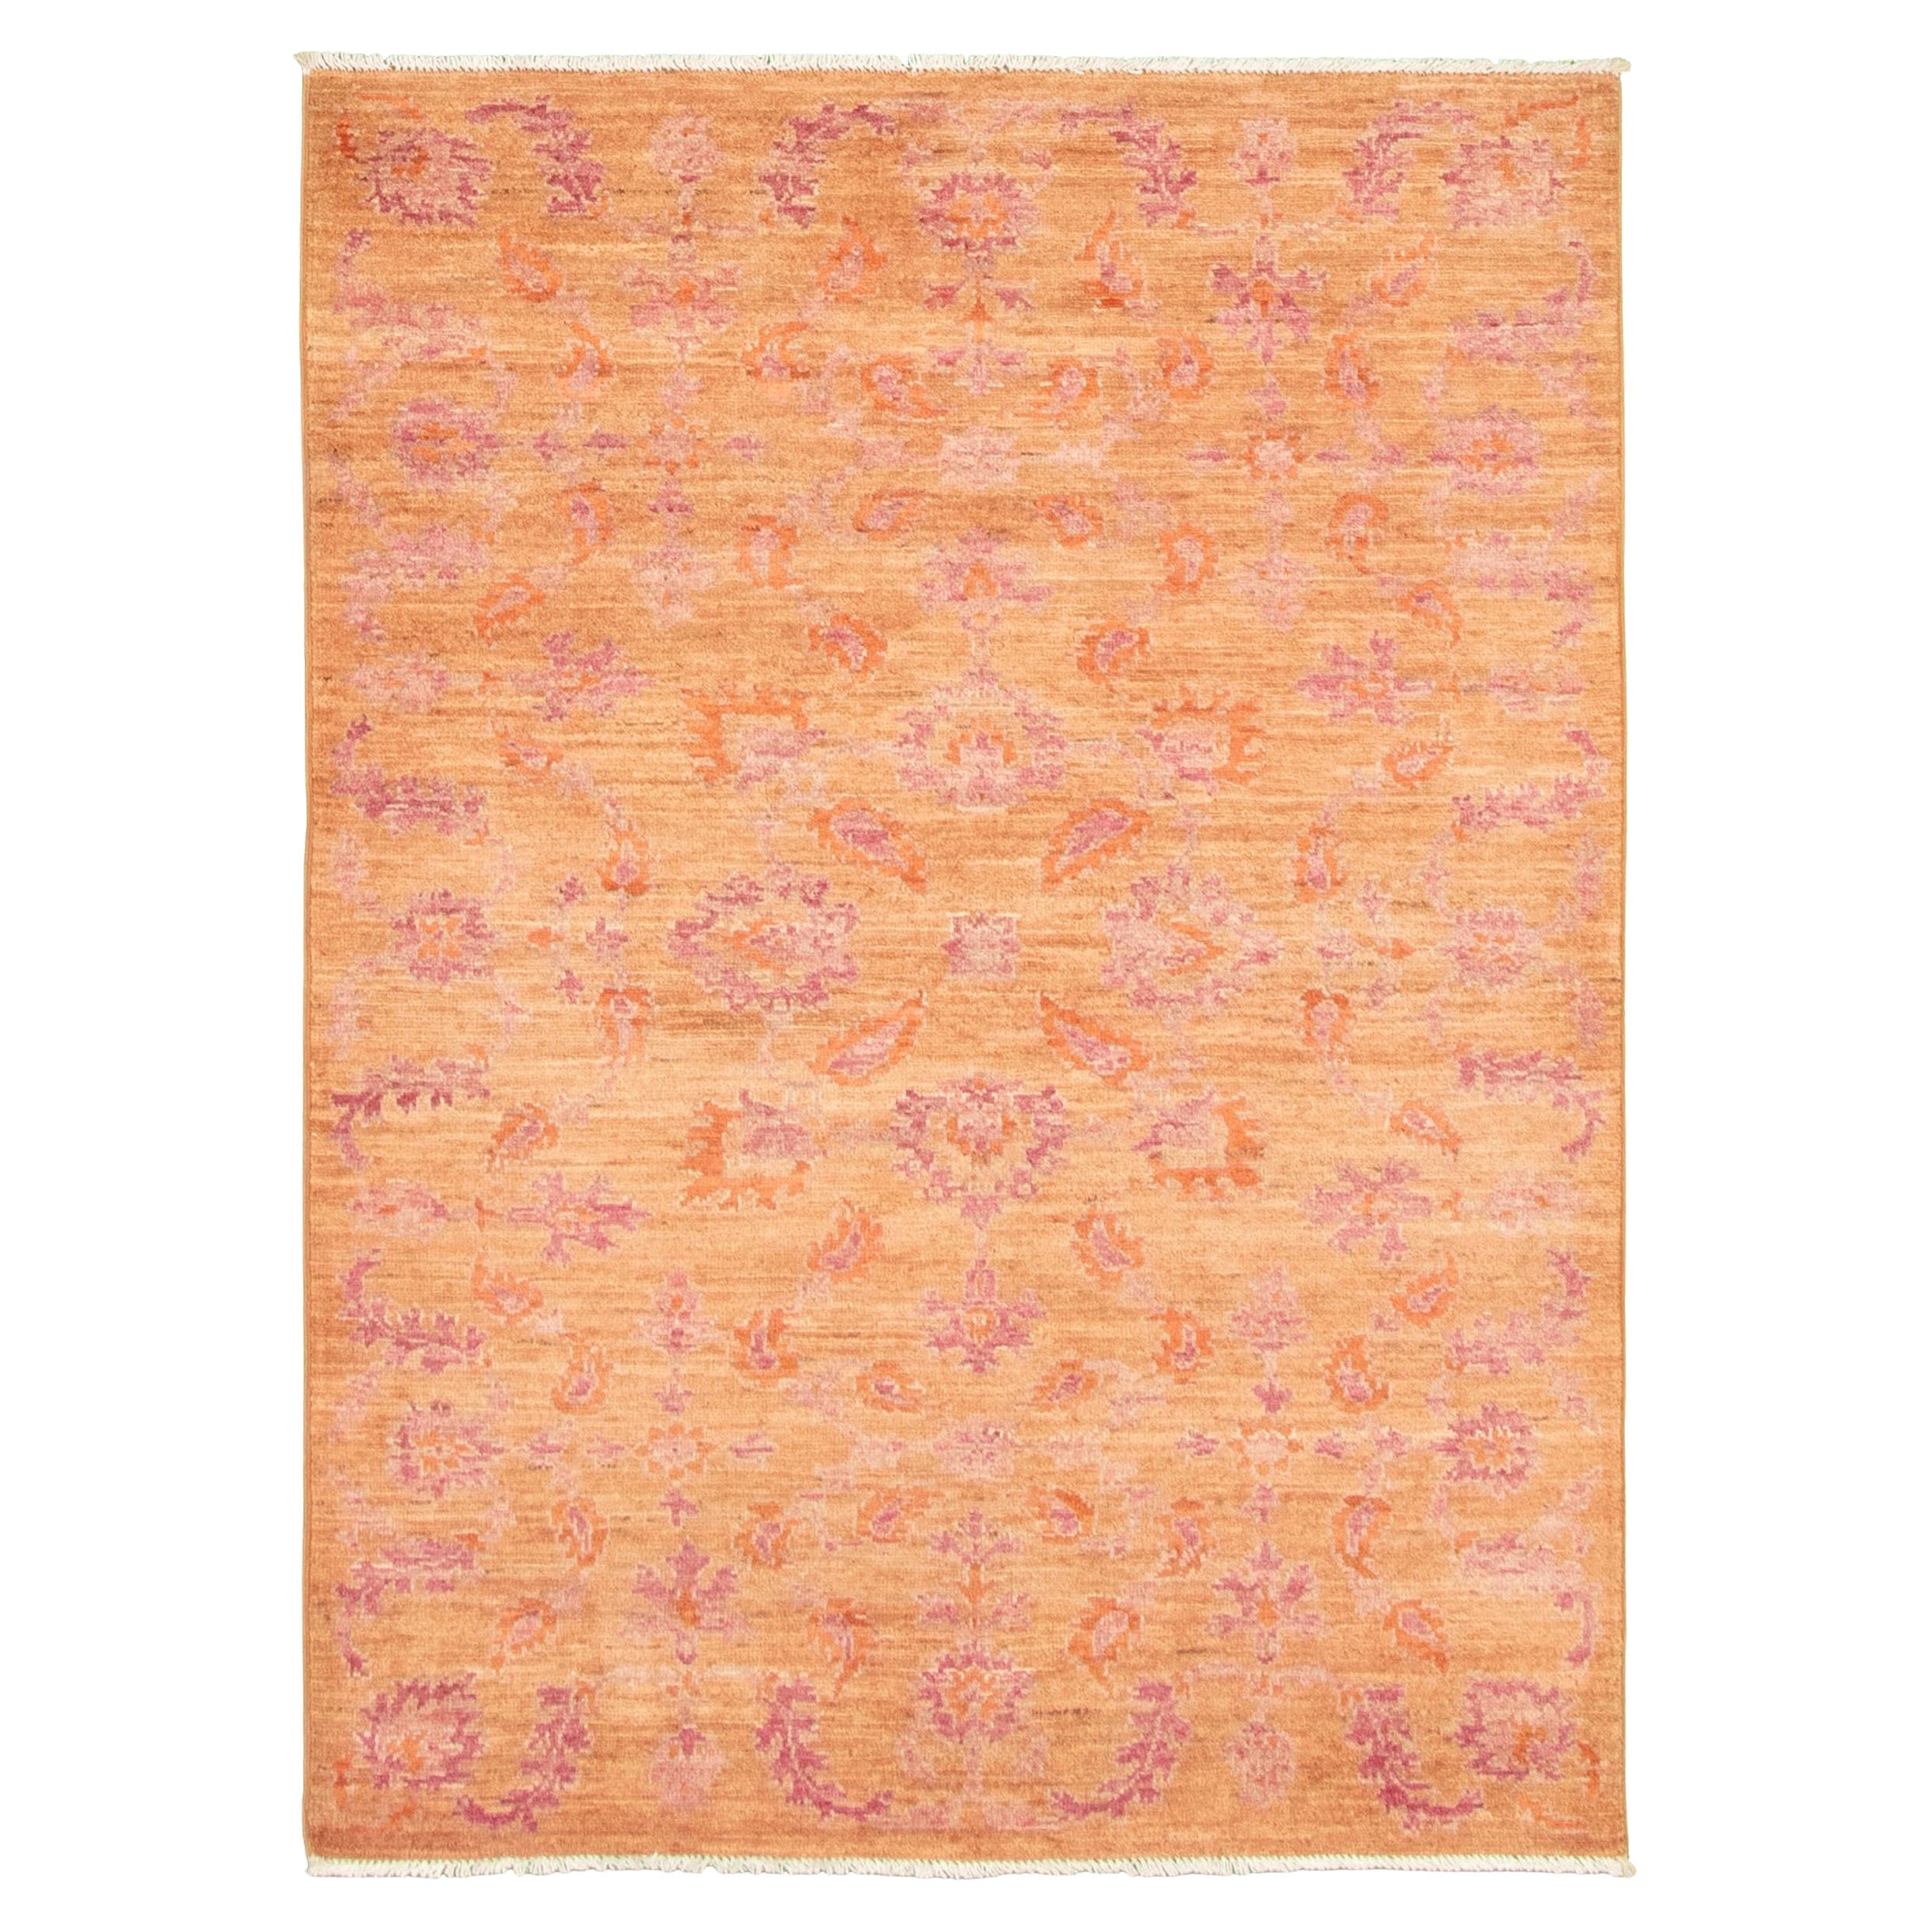 Fine Persian Oushak Rug, Pink & Orange, Transitional Floral Design